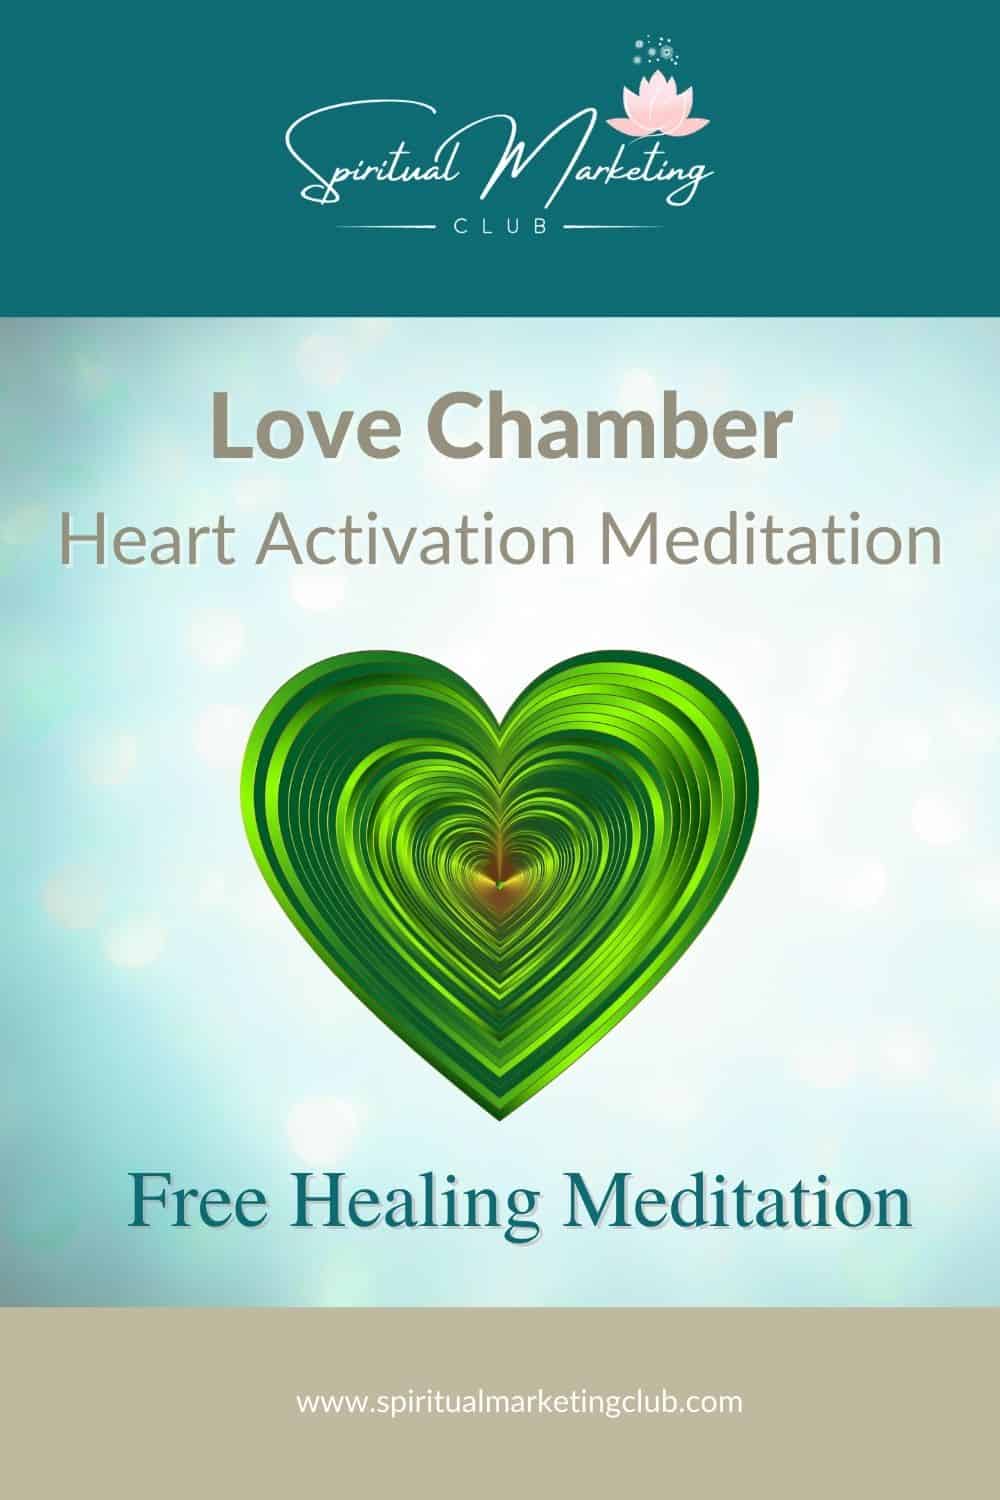 Lover Chamber Heart Activation Meditation Free Healing Meditation